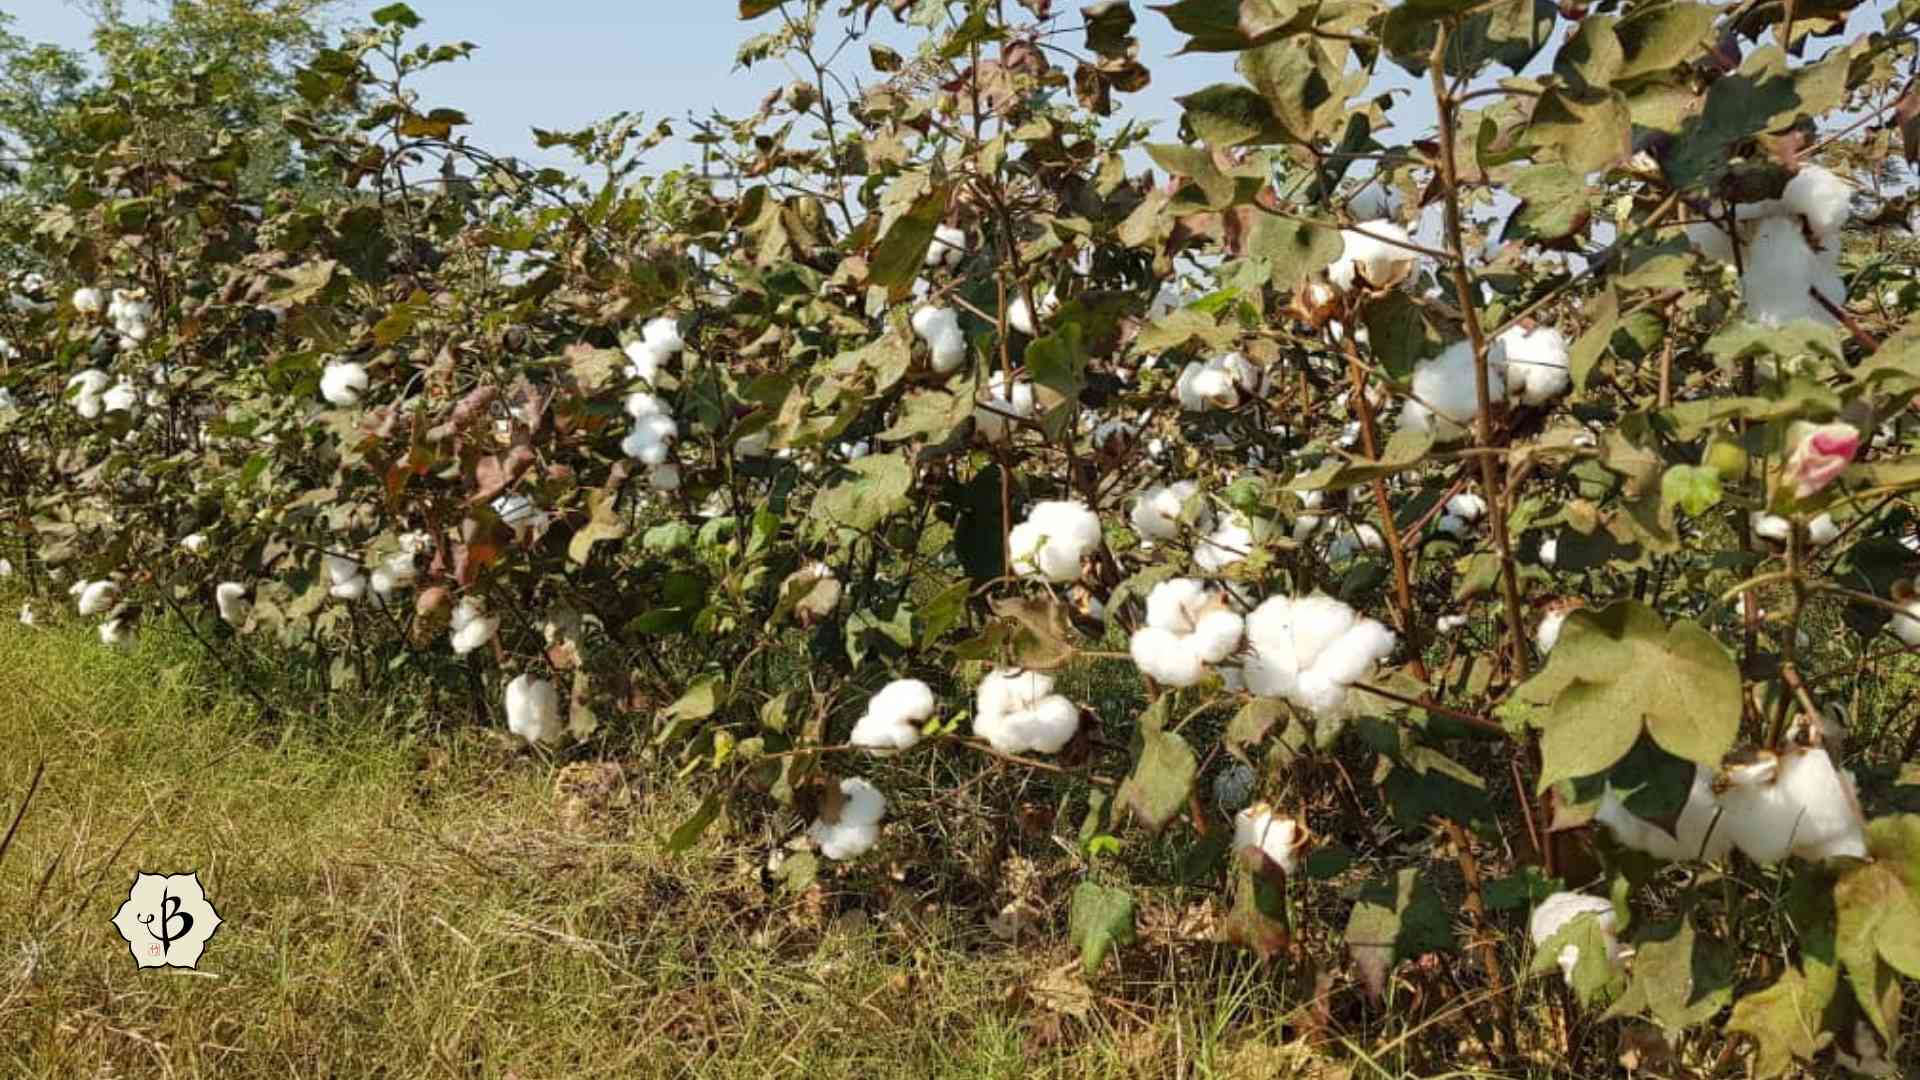 Cotton farming in Zambia